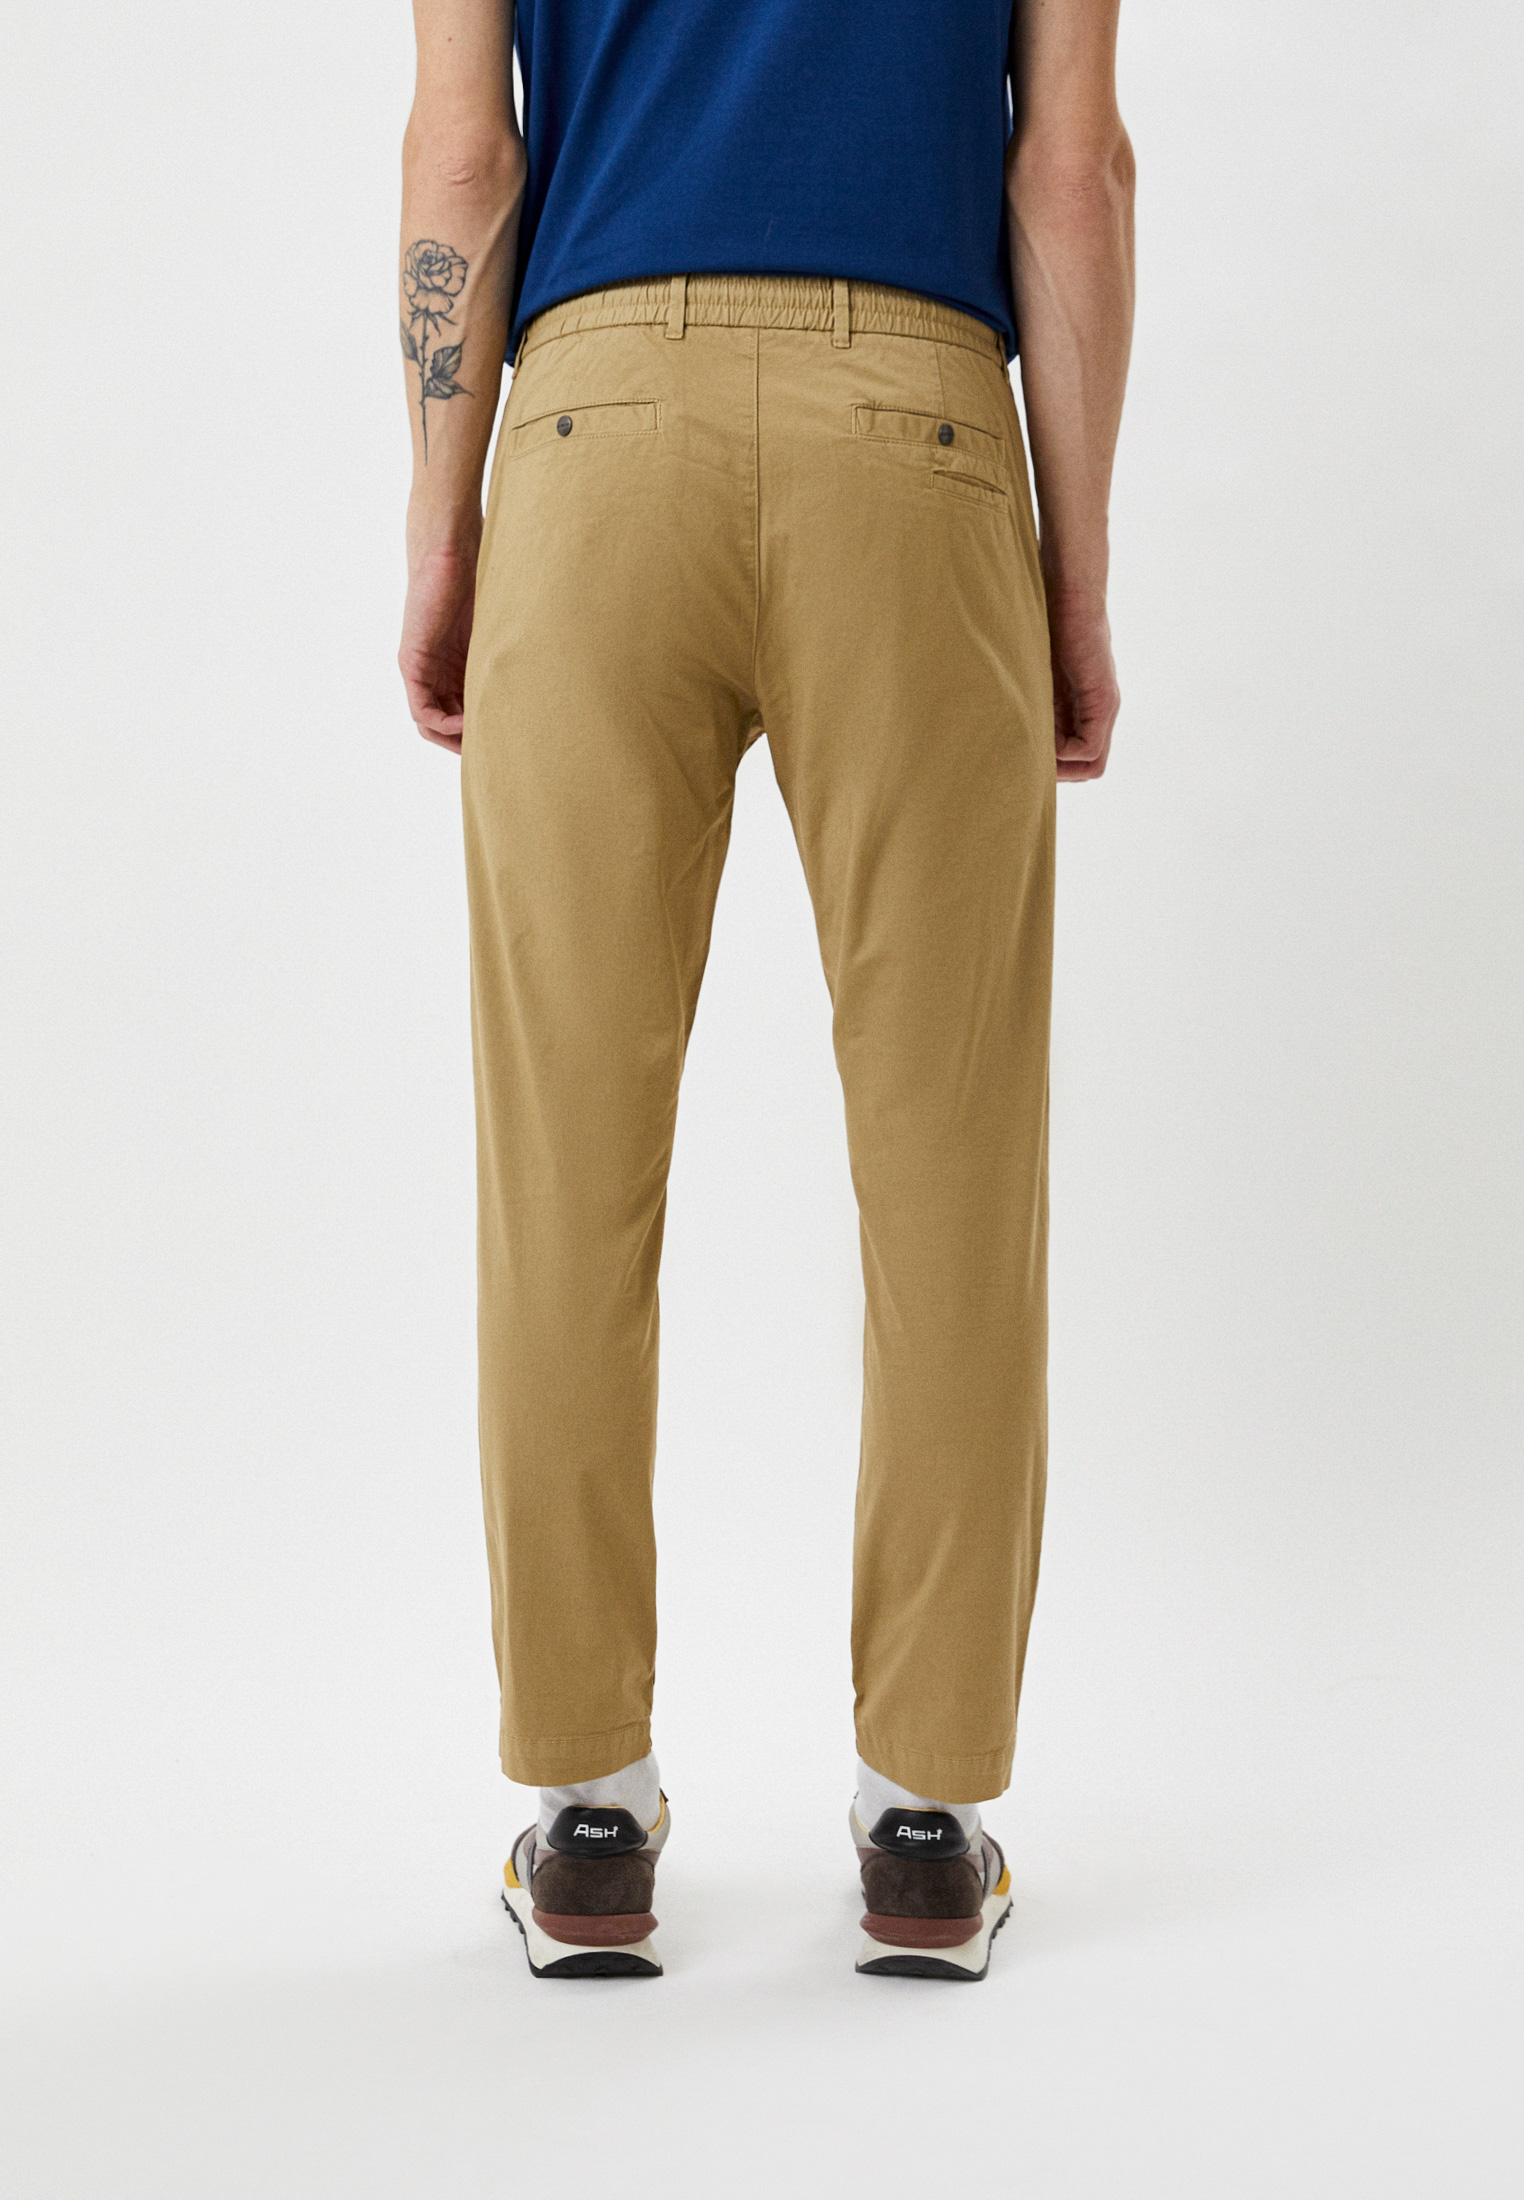 Мужские повседневные брюки Bikkembergs (Биккембергс) CP11001S3720: изображение 3